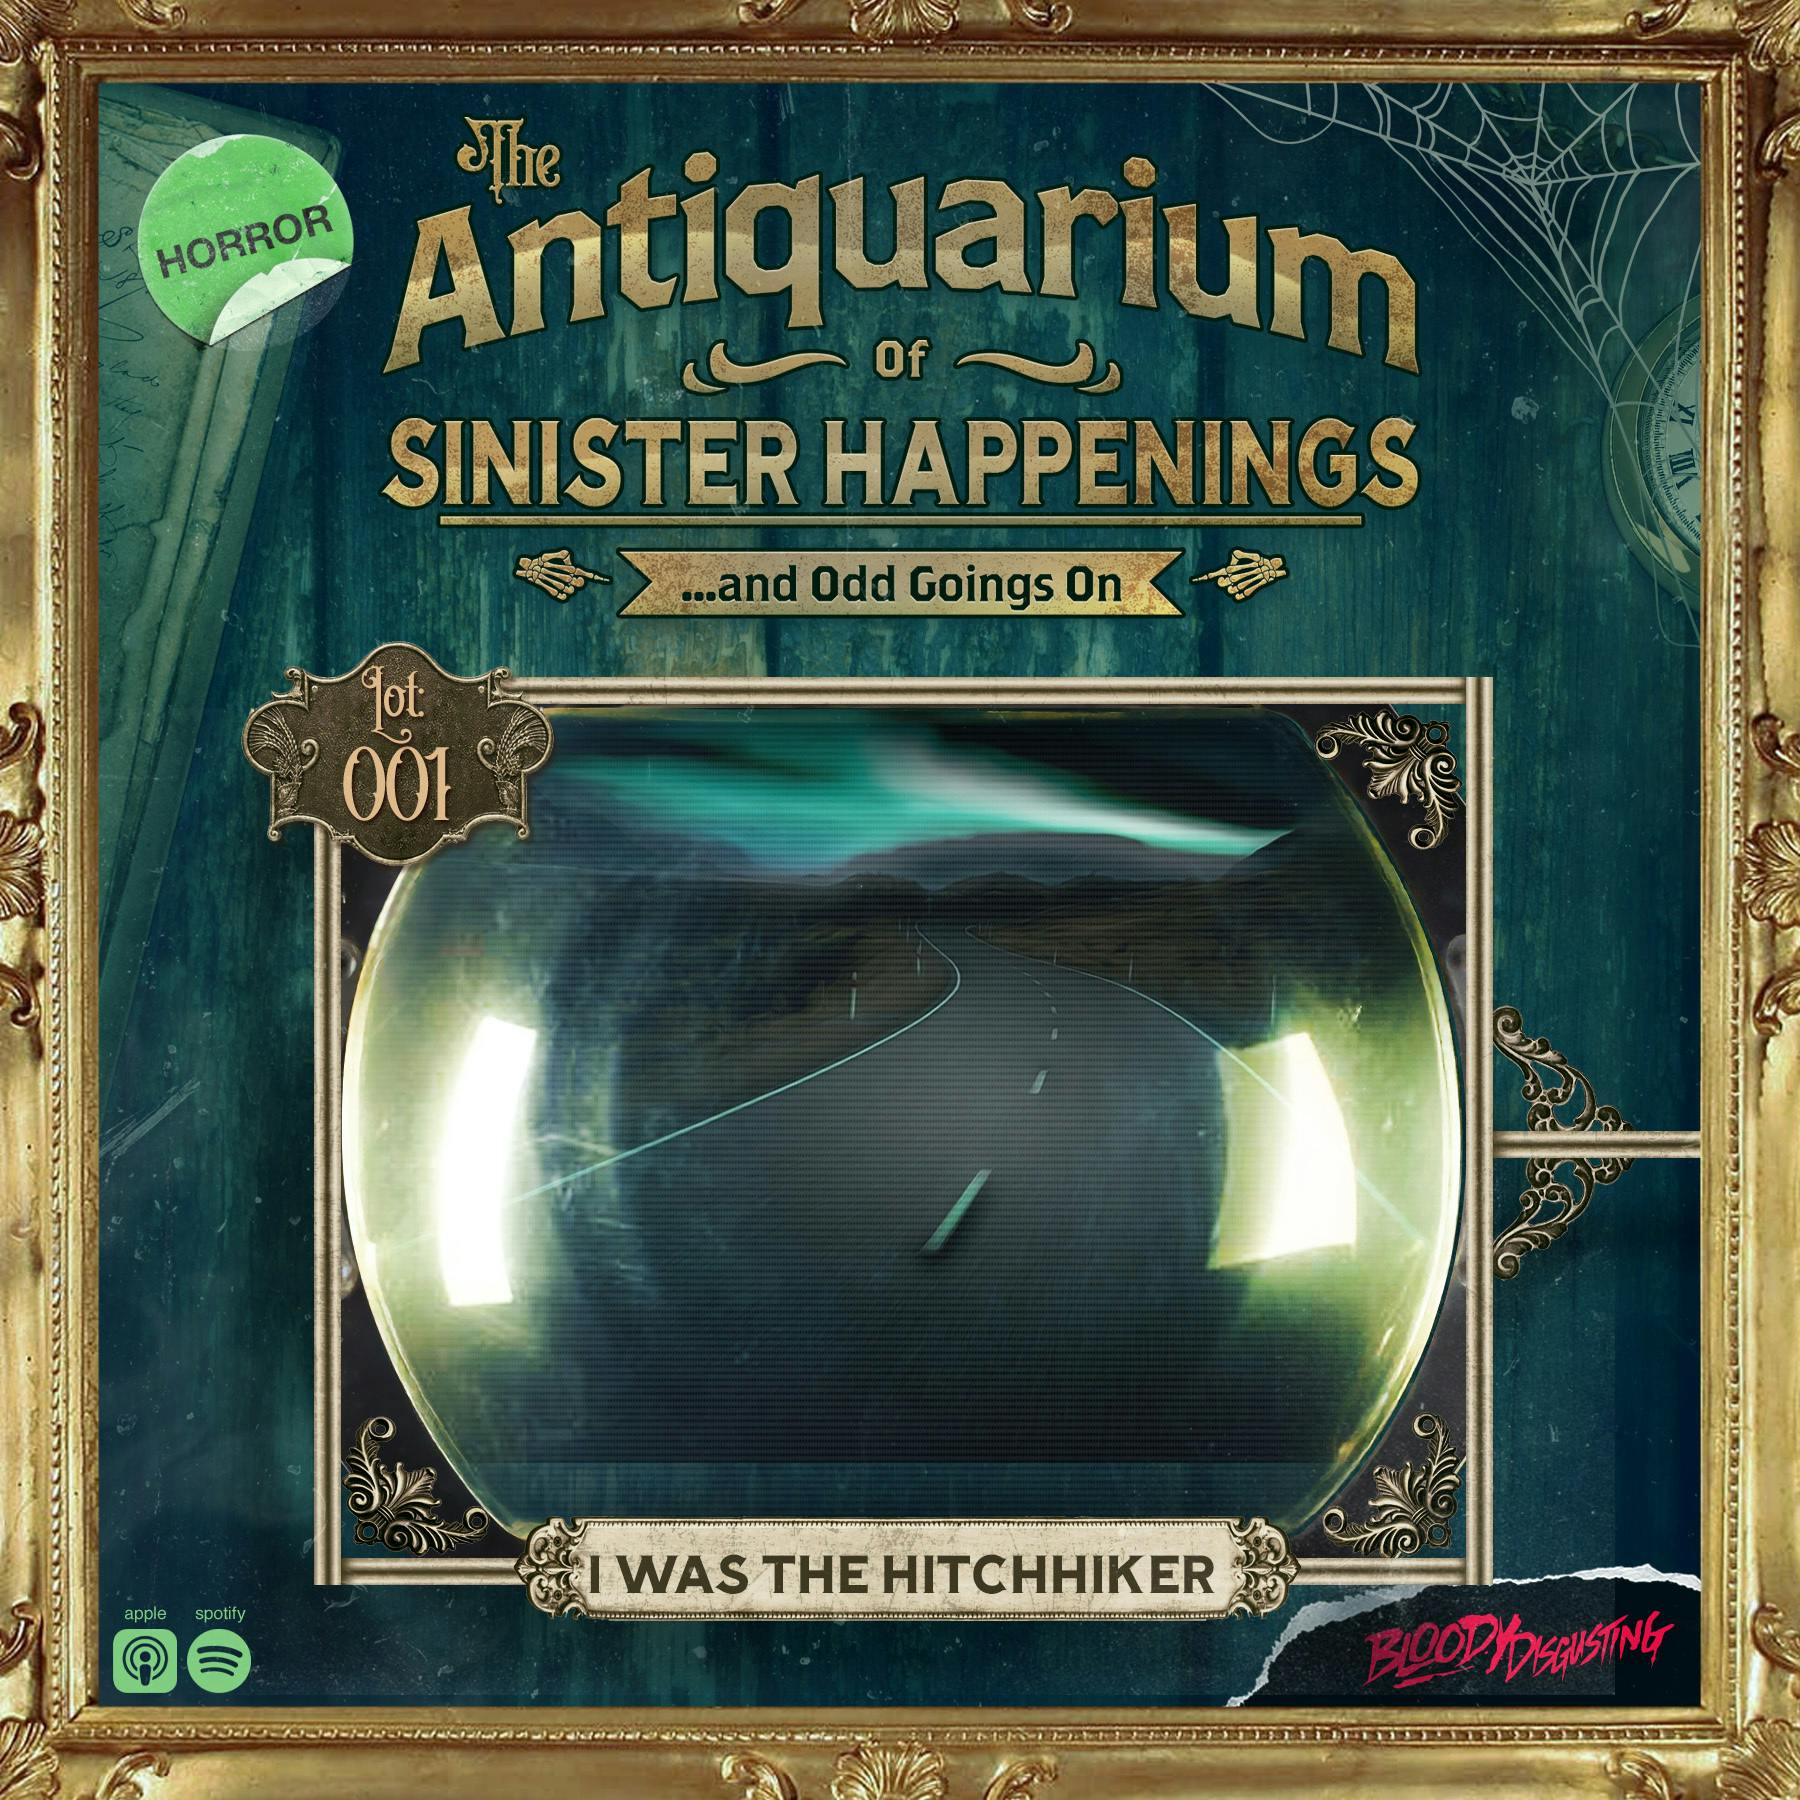 Presenting: The Antiquarium of Sinister Happenings